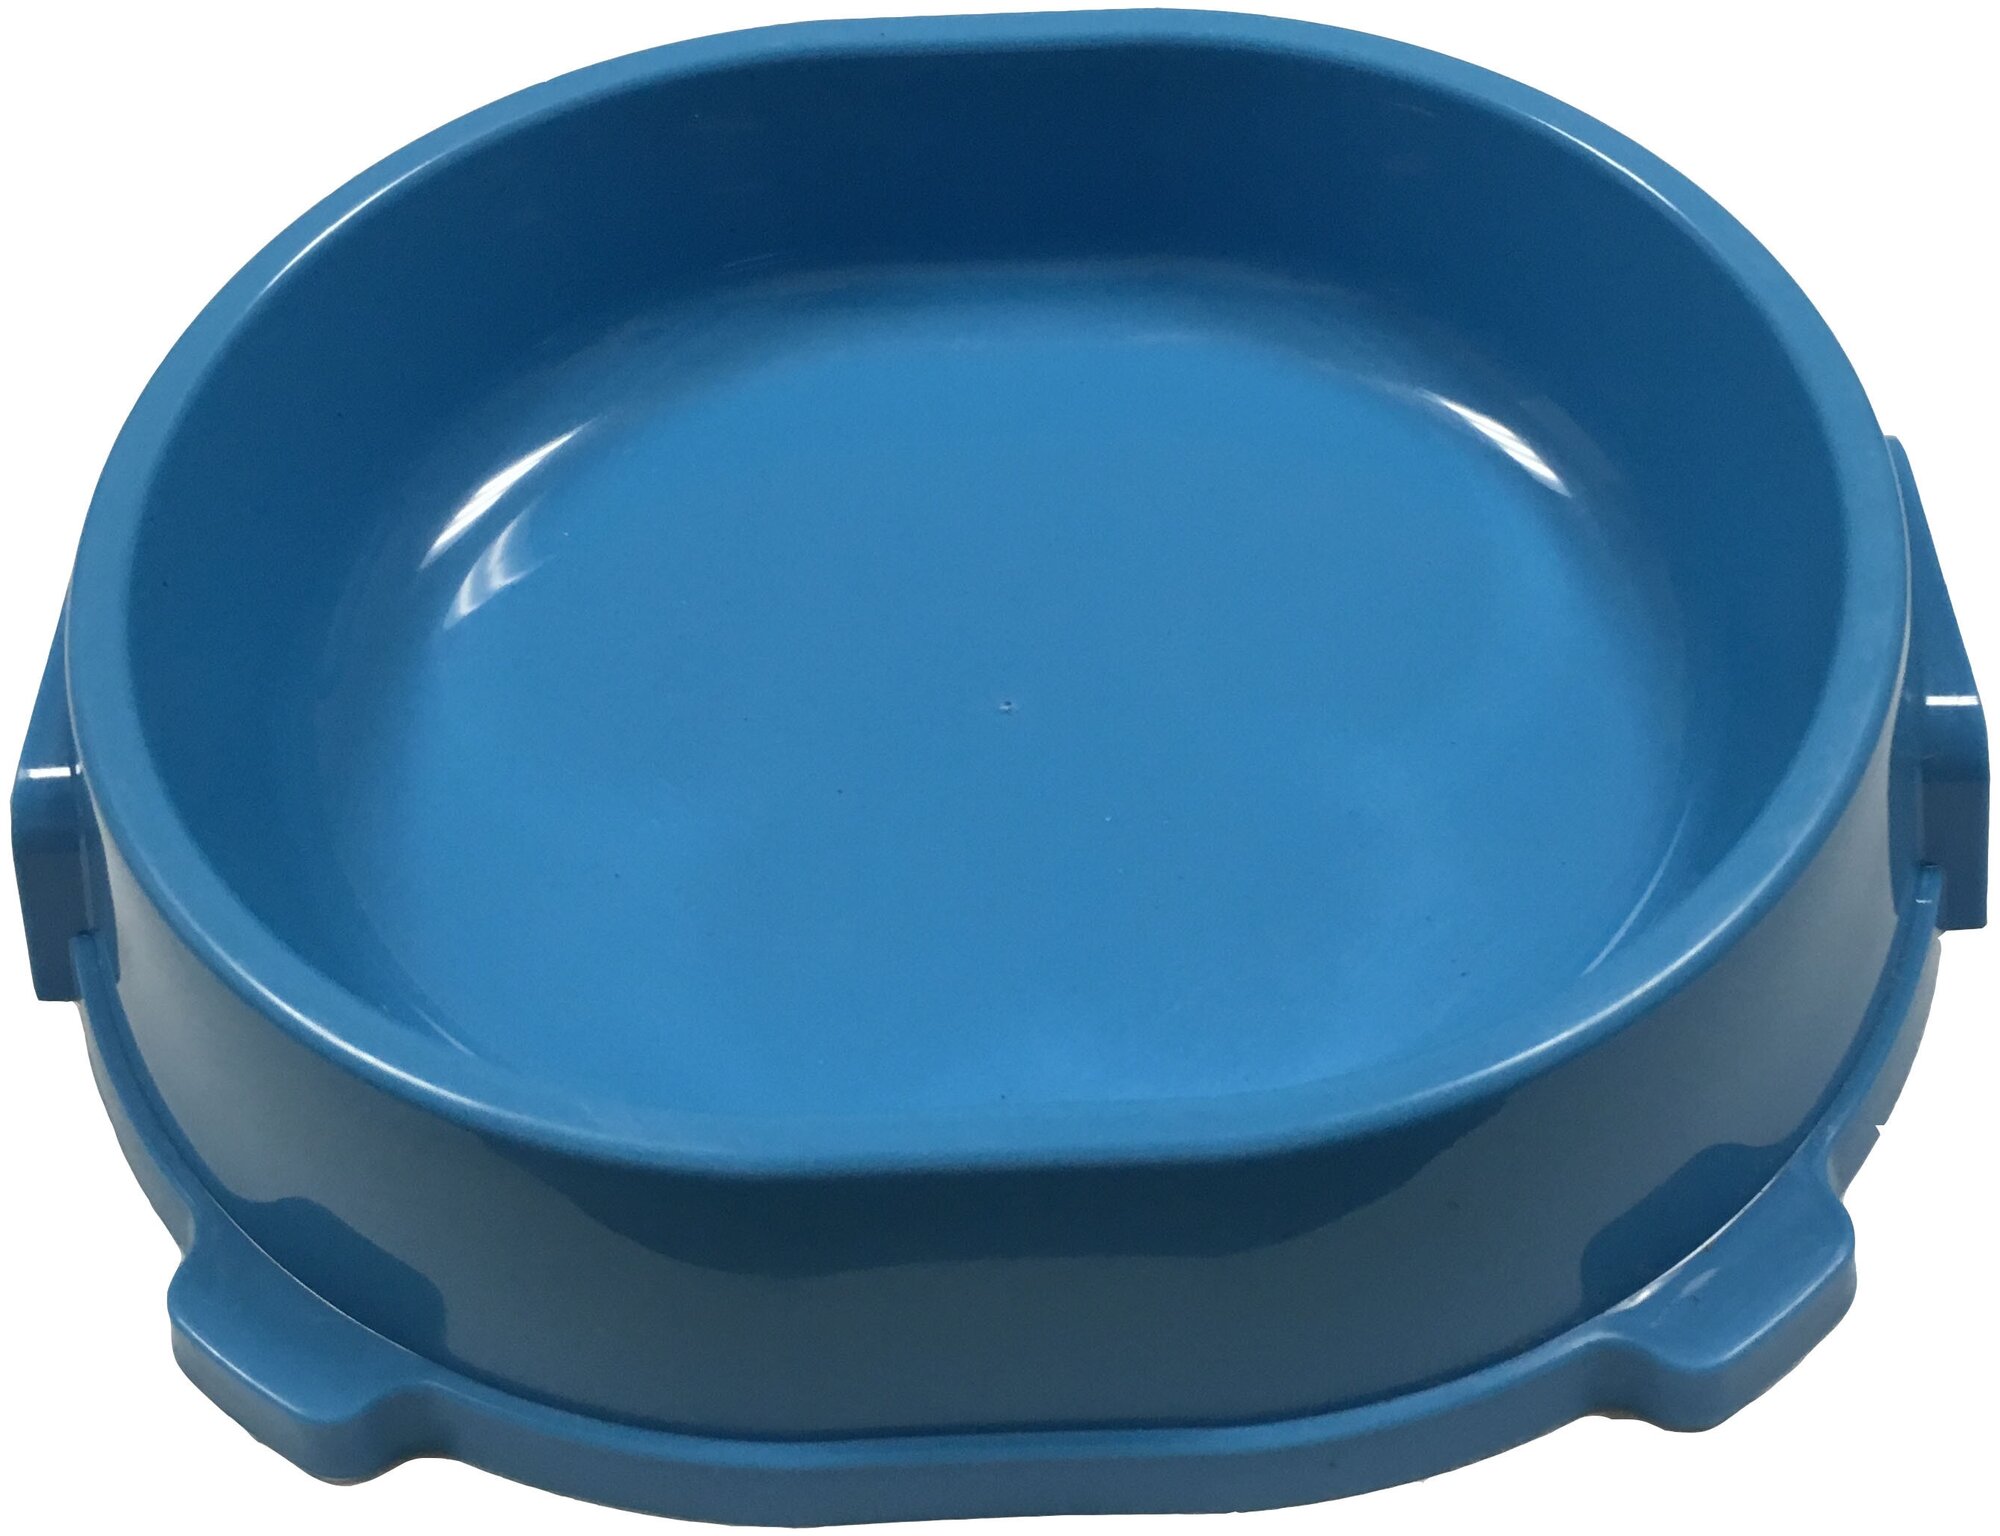 FAVORITE FG17903 миска пластиковая нескользящая голубая 0,22л